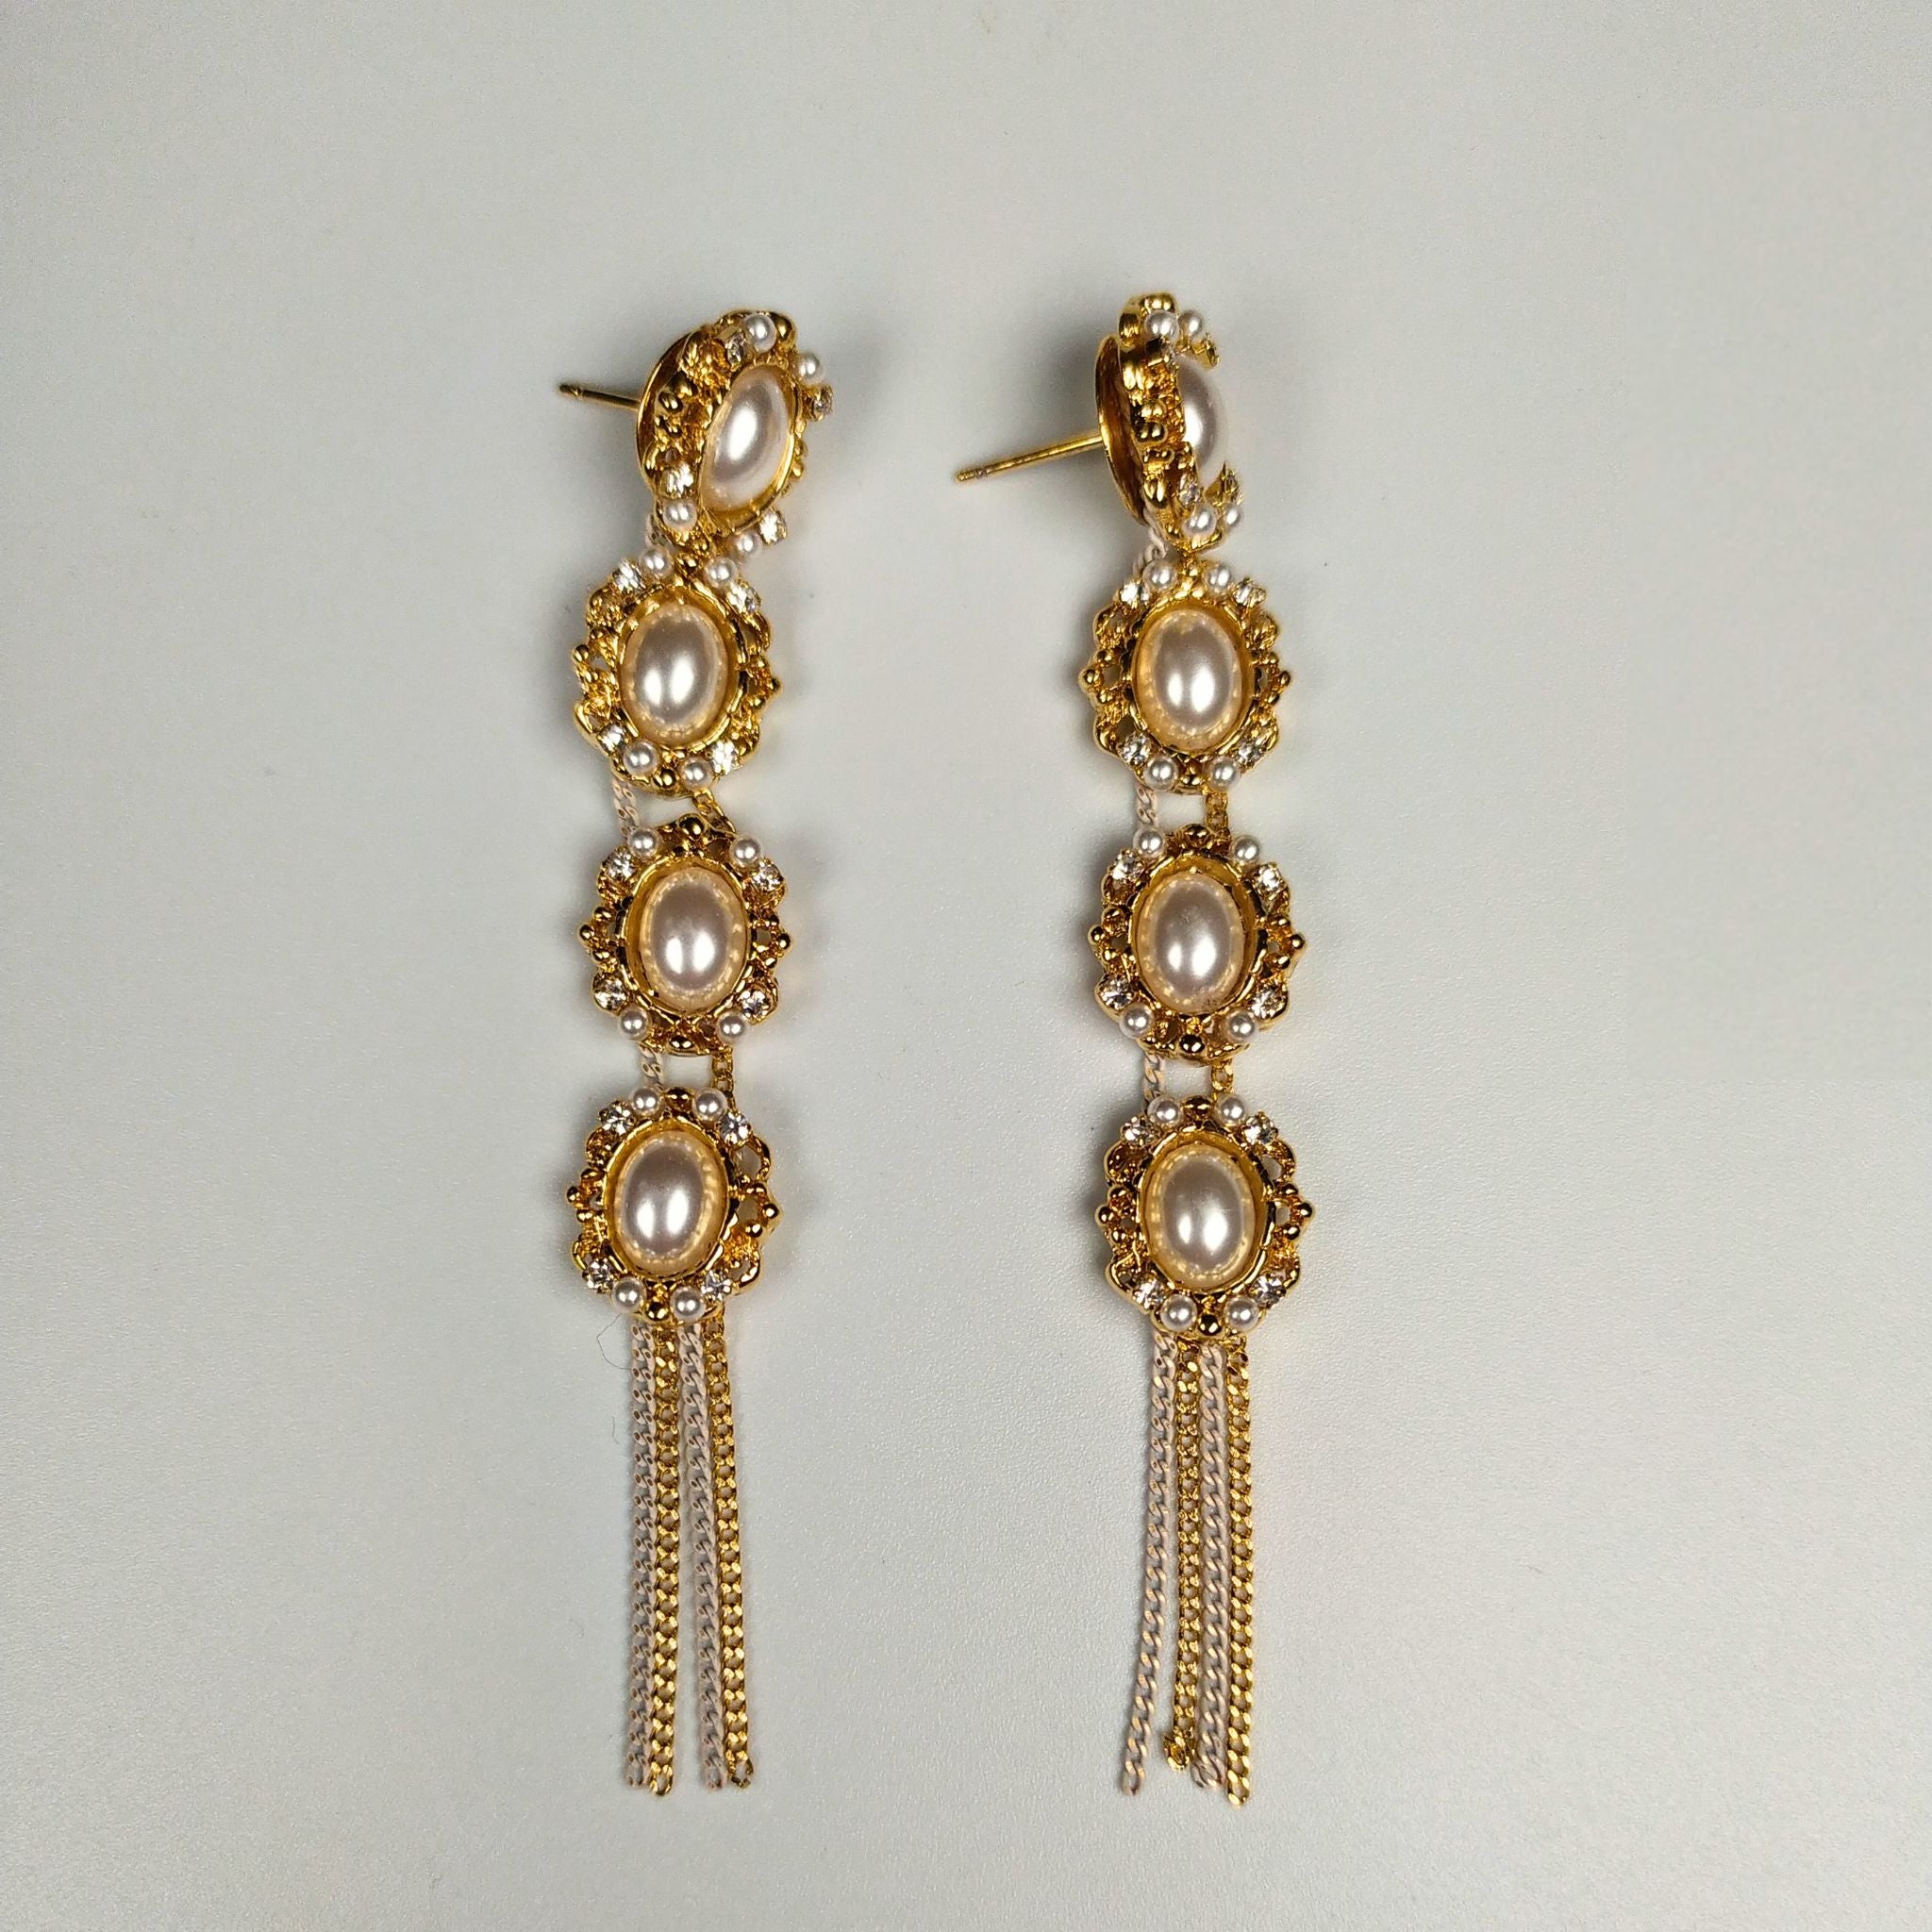 The Golden Showers Earrings